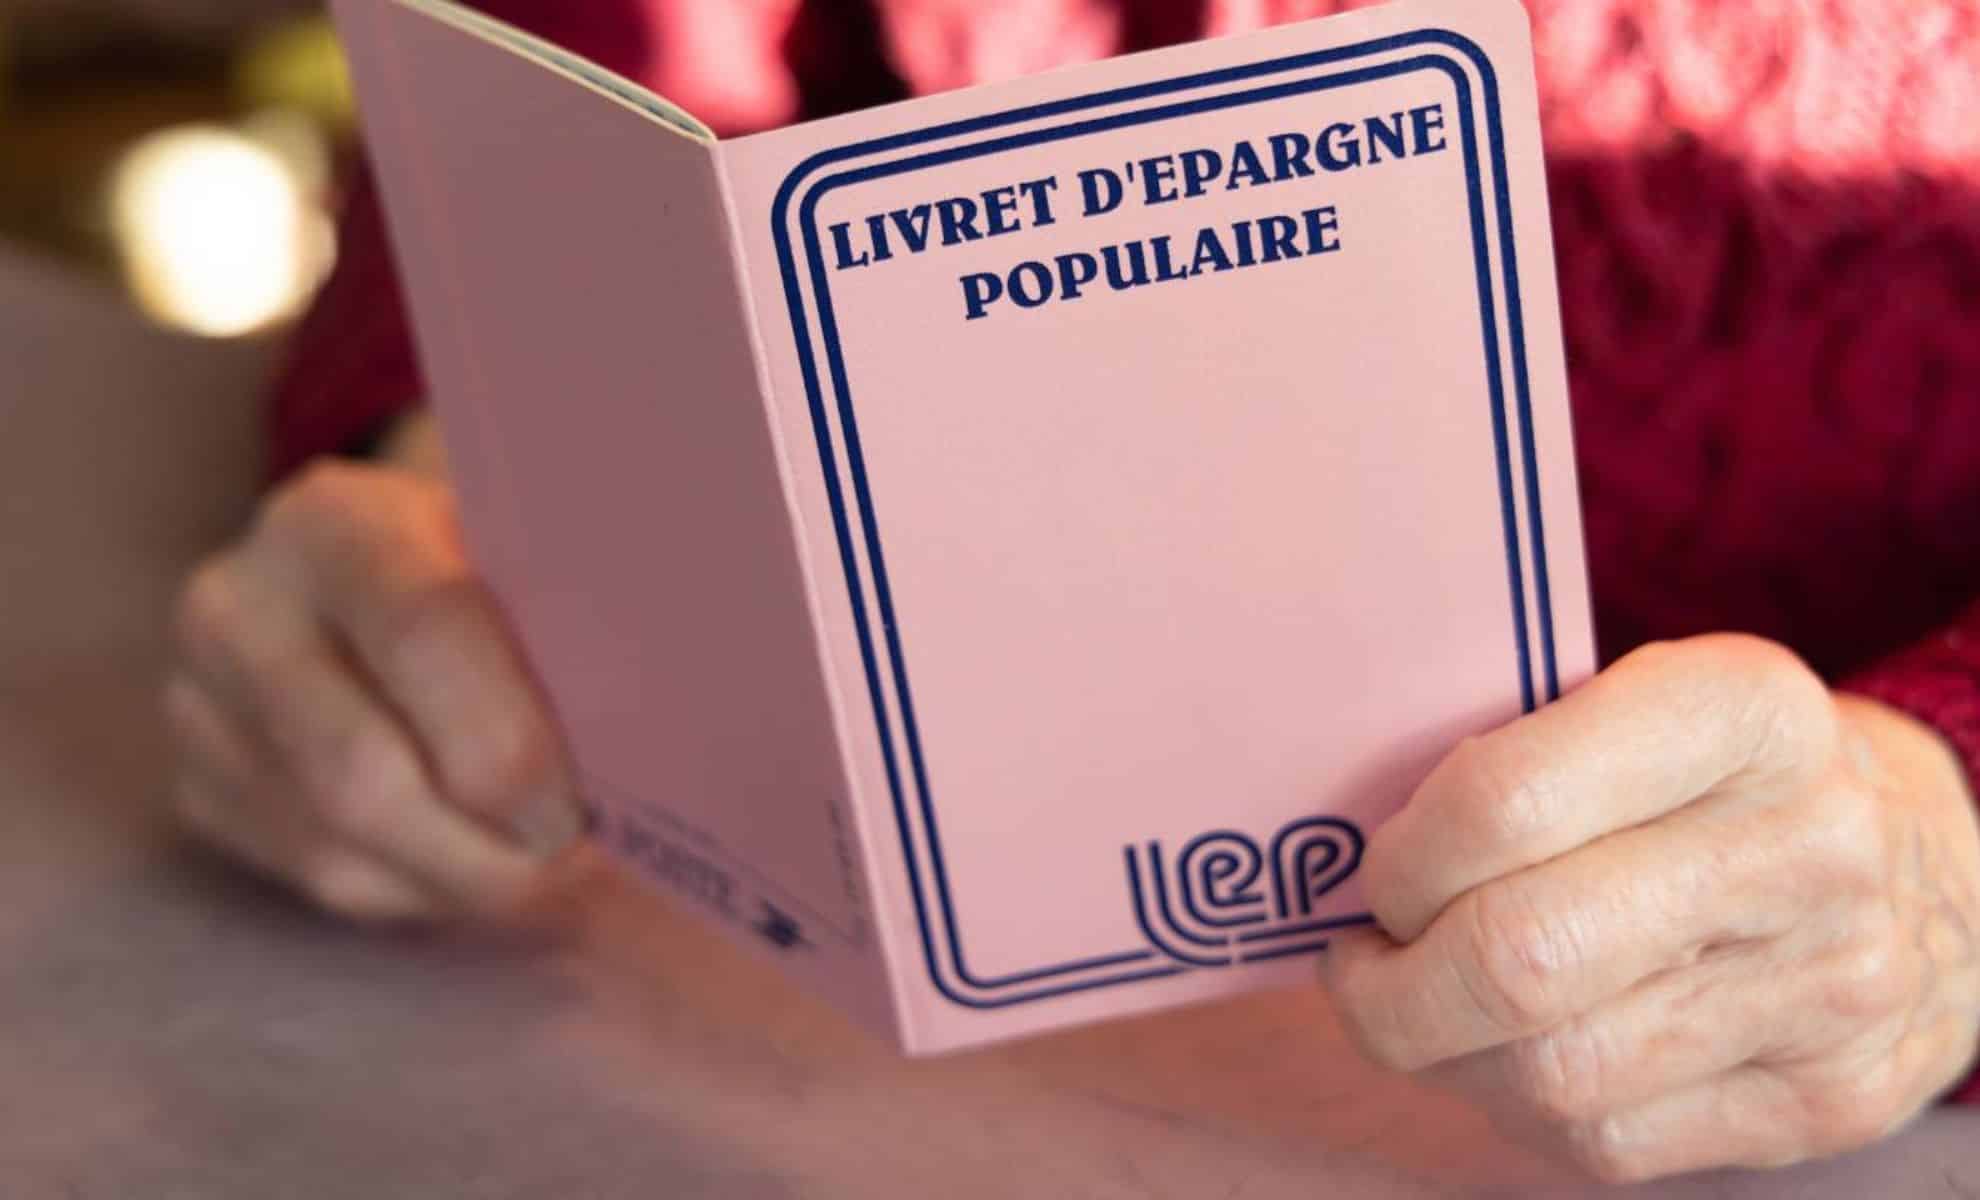 Siete uno degli 8,5 milioni di francesi che non possono iscriversi alla LEP?